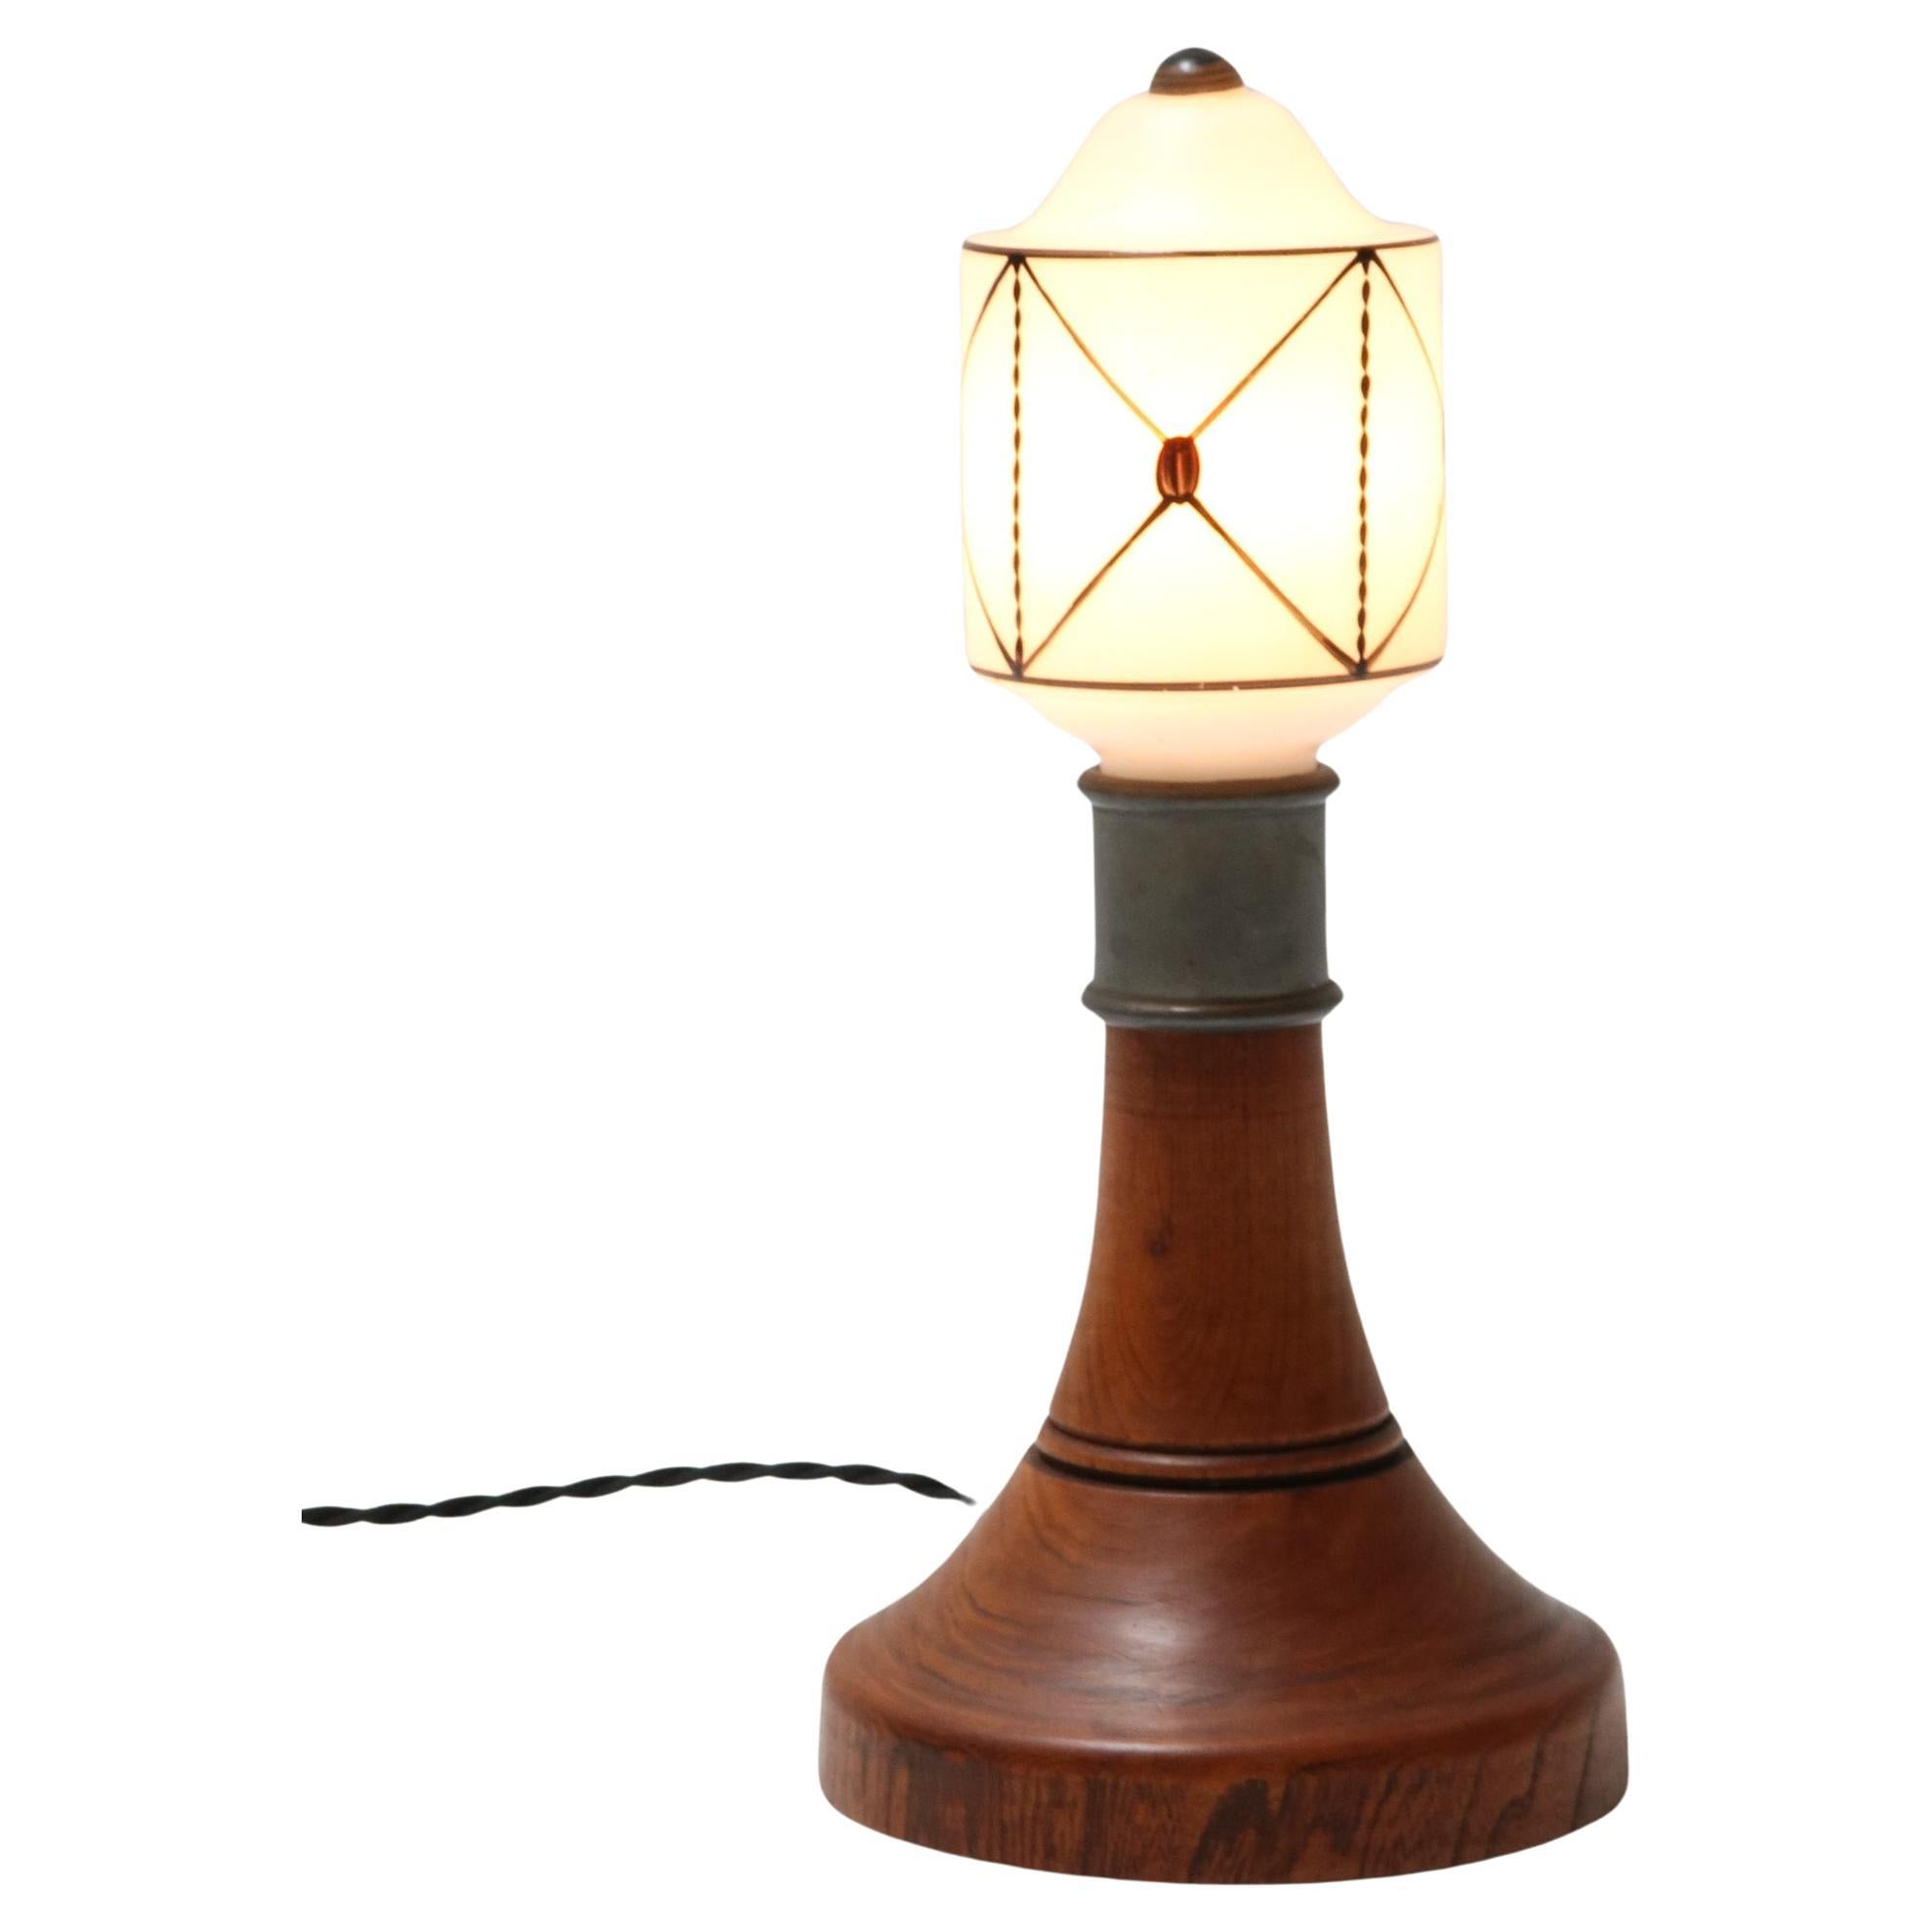  Lampe de table Art nouveau Arts & Crafts, années 1900